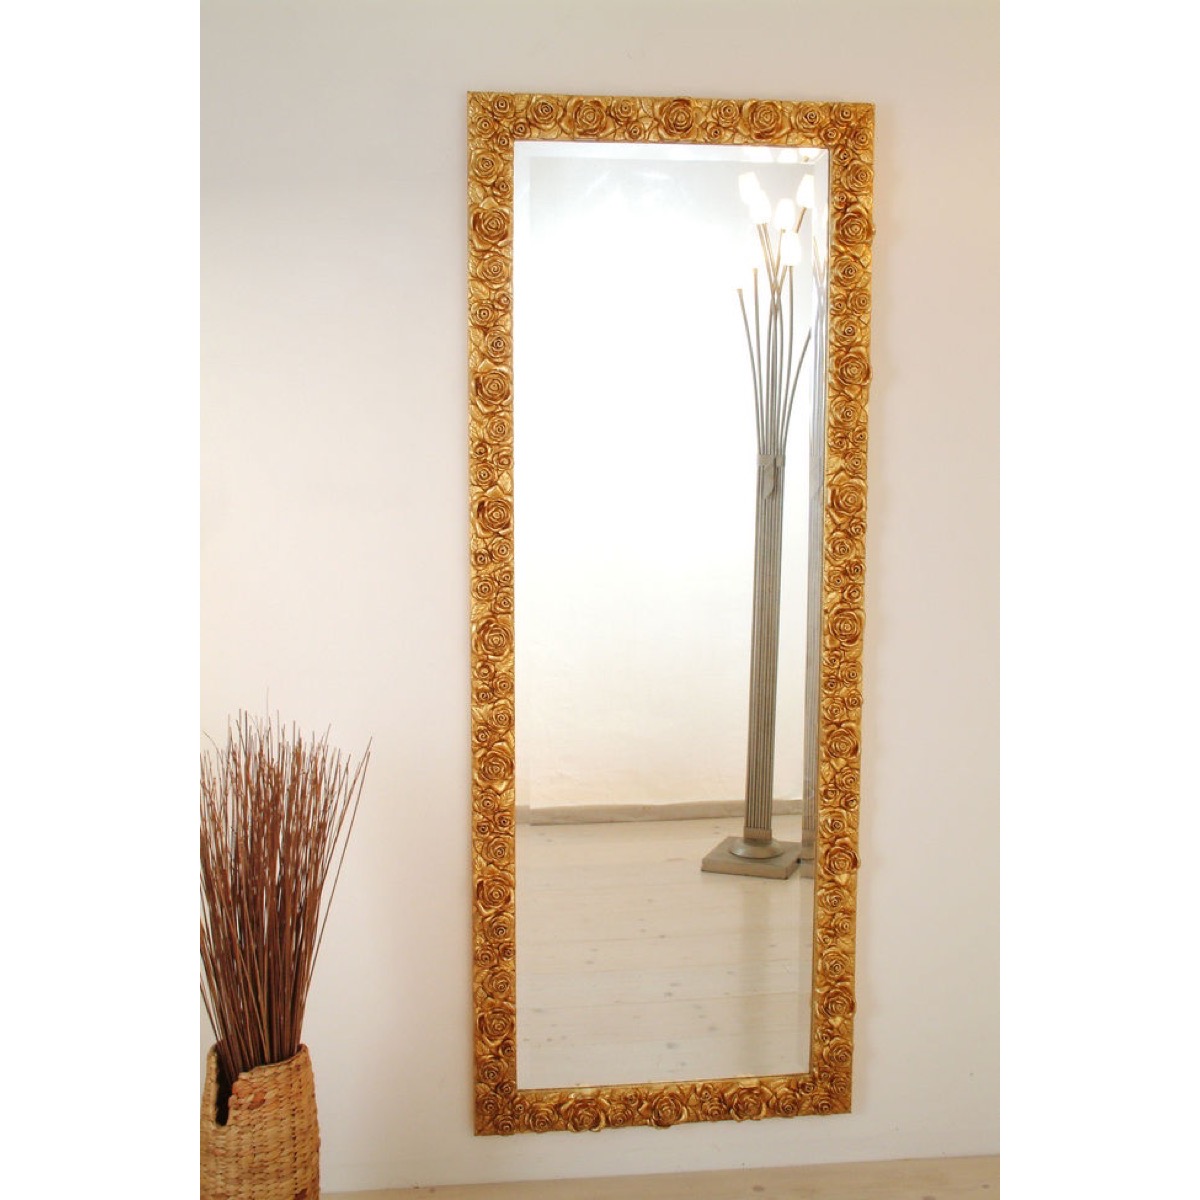 Spiegel von Holländer Leuchten Spiegel CLASSICO ROSE GARDEN GRANDE 452 2944 G